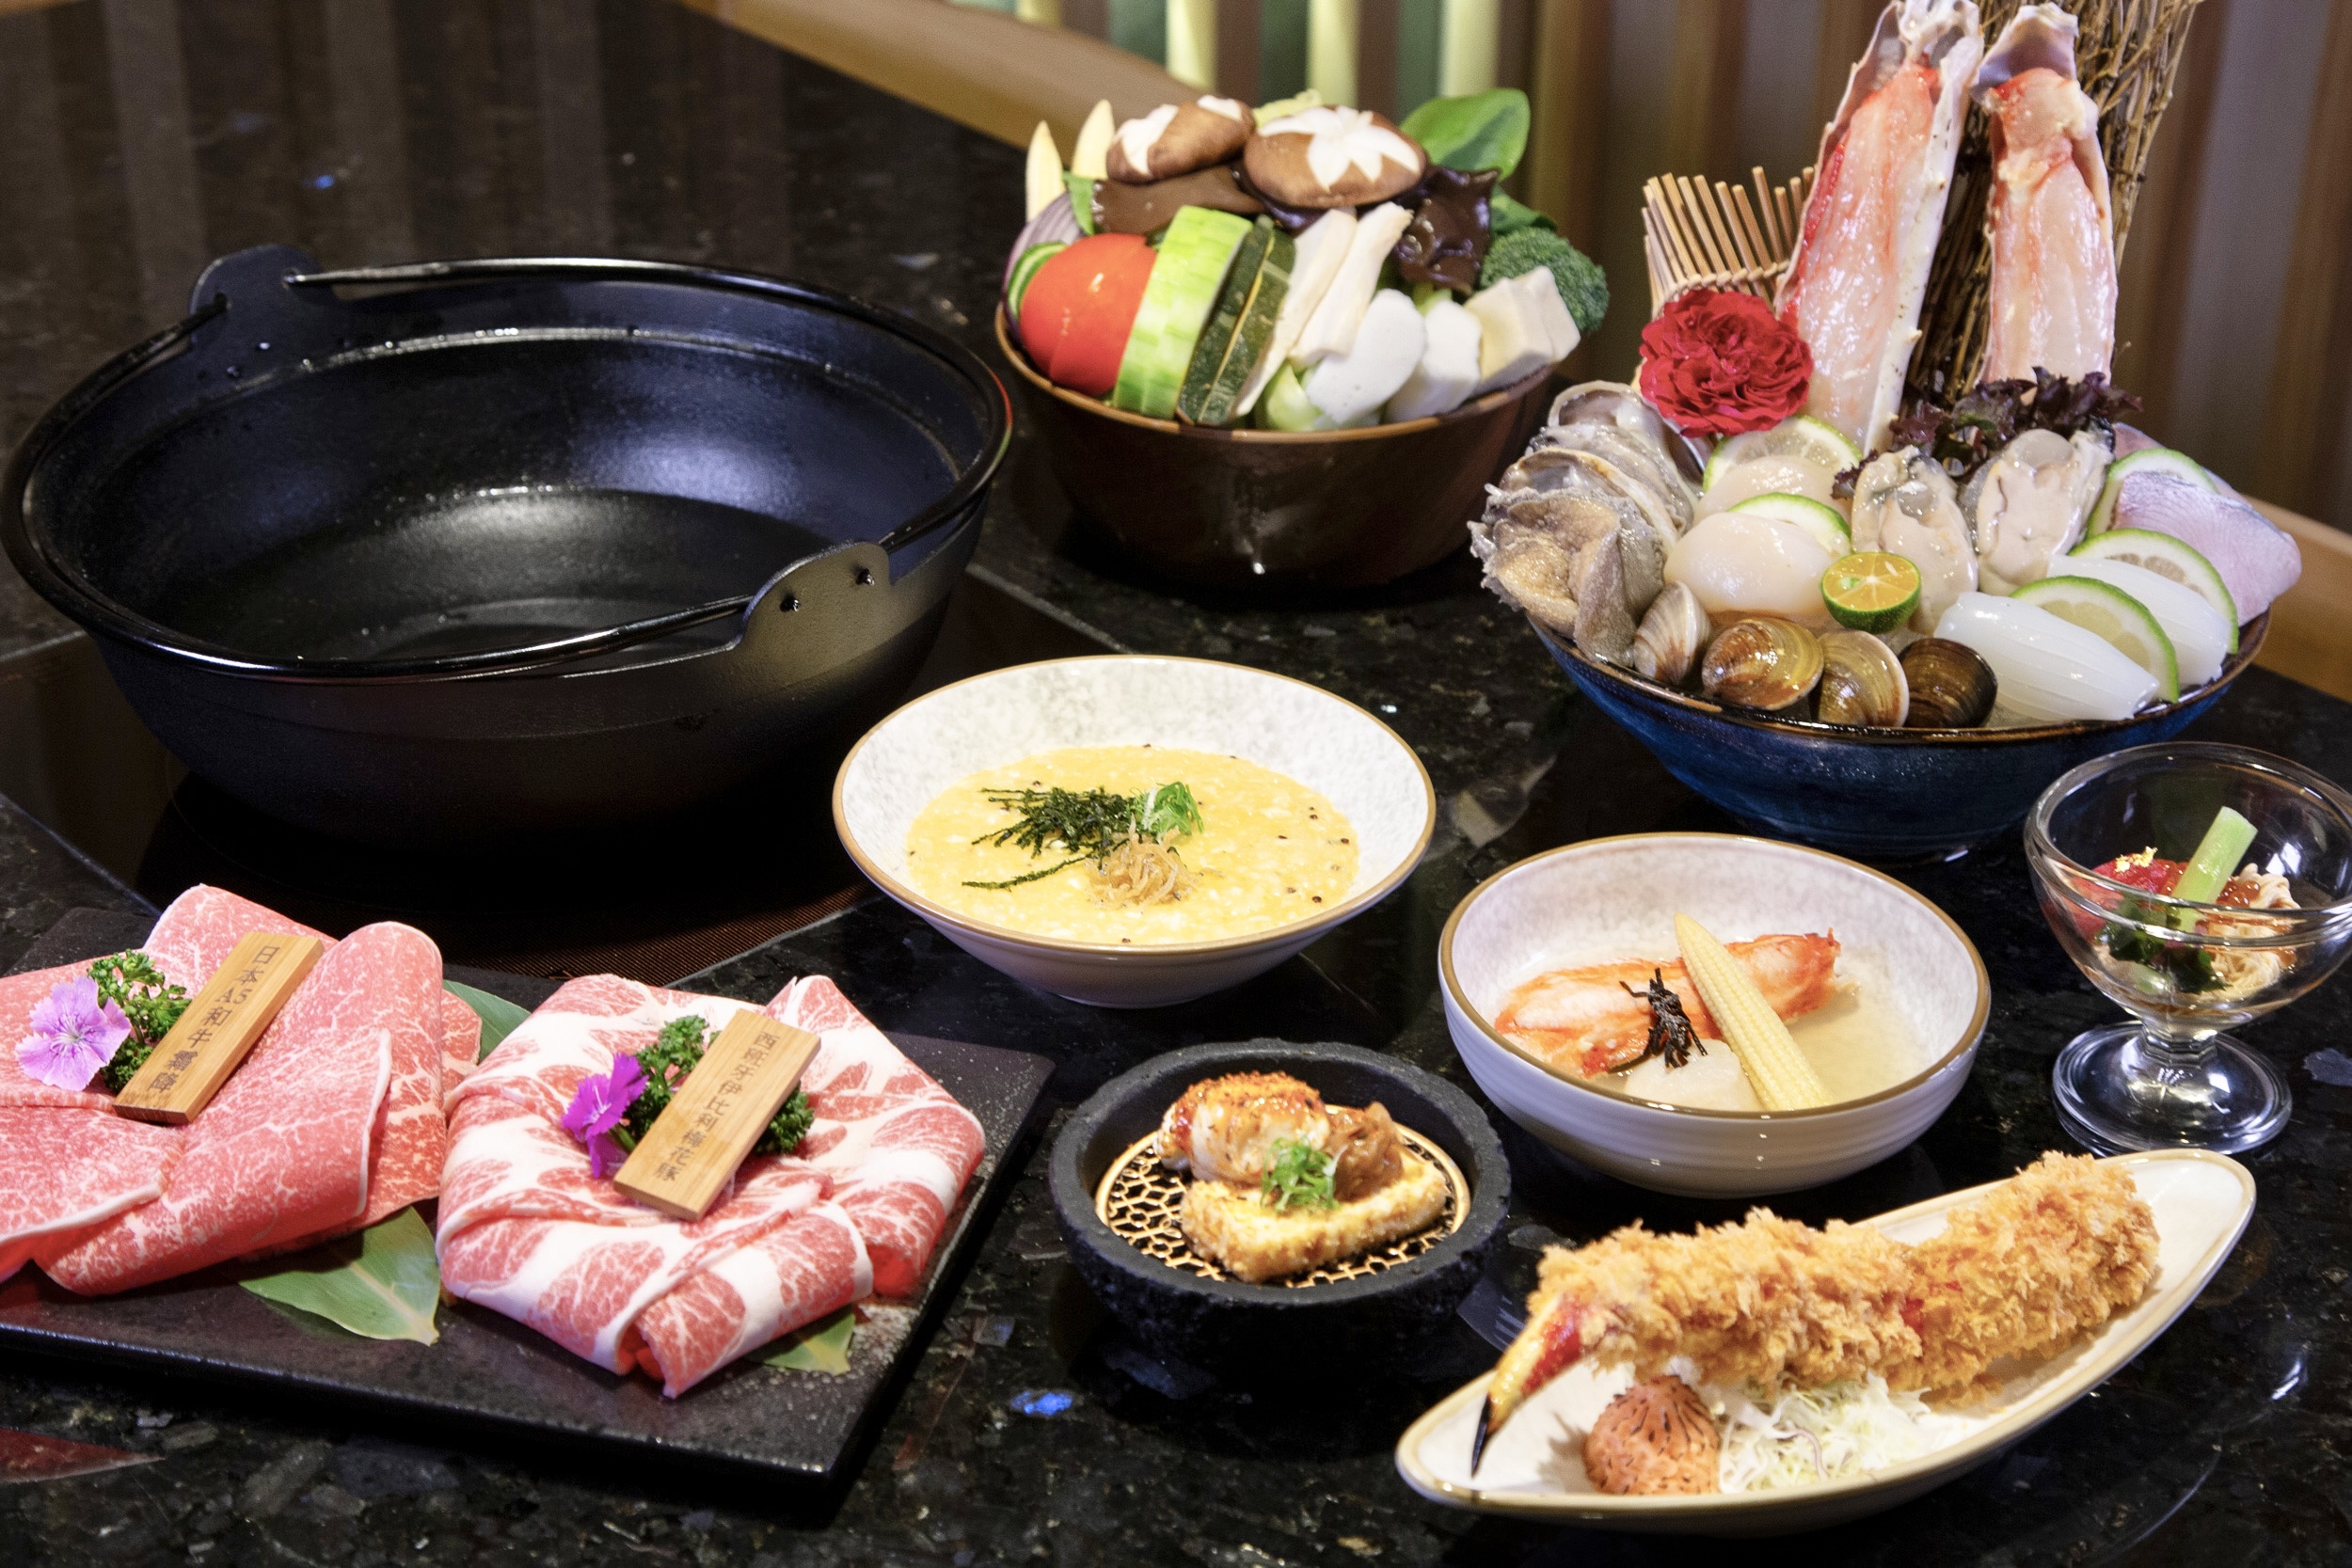 「感蟹妈妈」可一次尽享帝王蟹四食与日本和牛的精致套餐。记者宋健生/摄影